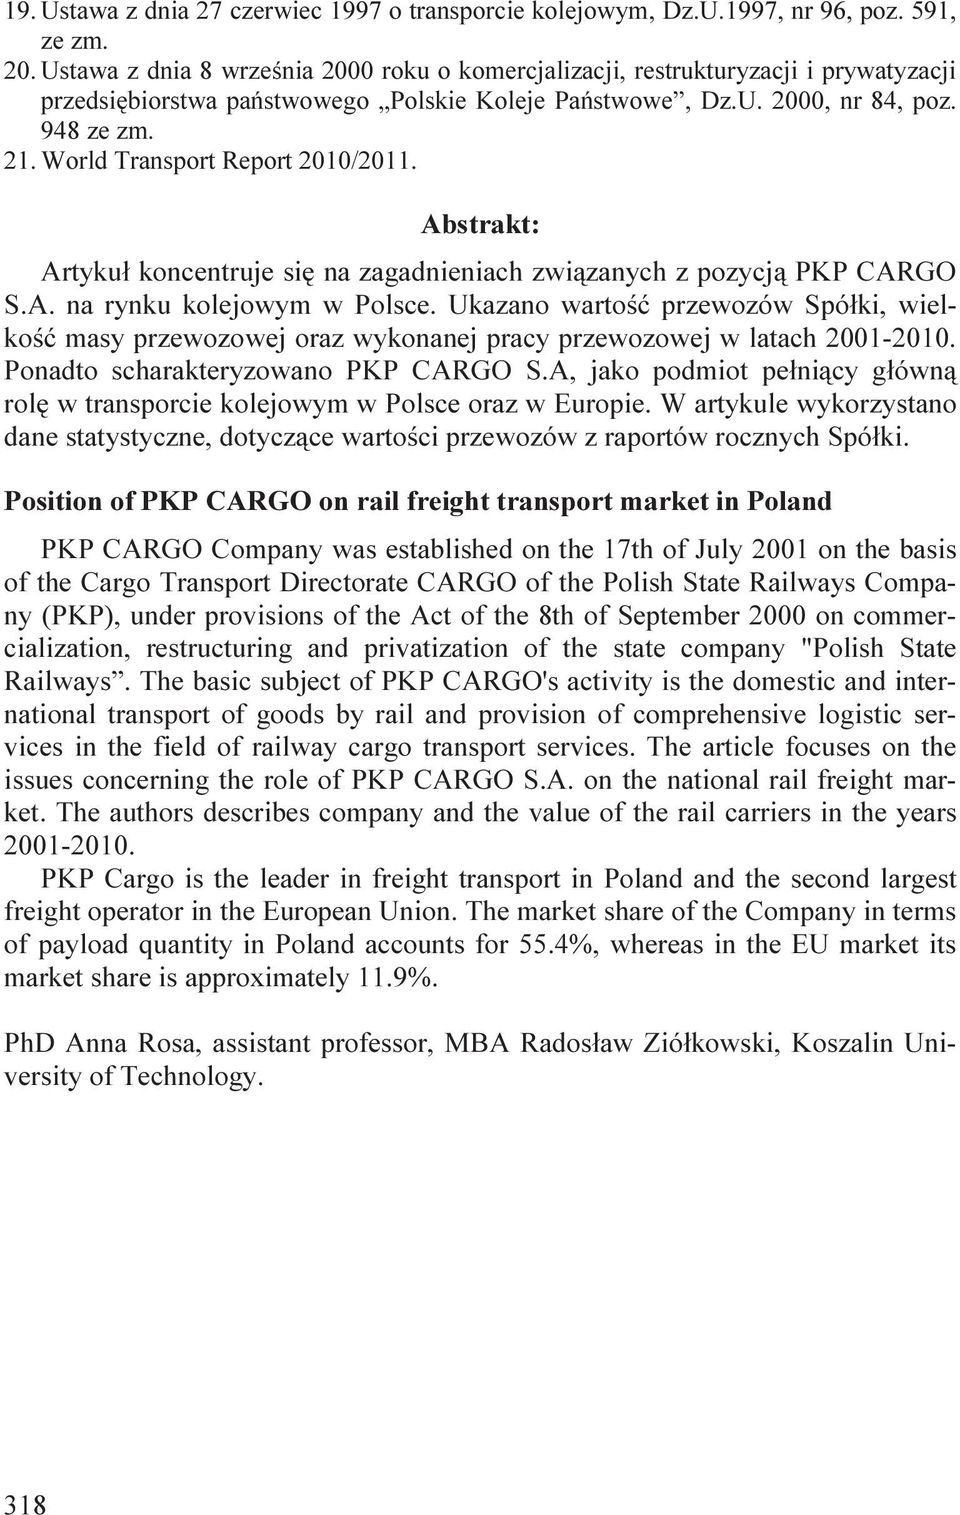 World Transport Report 2010/2011. Abstrakt: Artykuł koncentruje się na zagadnieniach związanych z pozycją PKP CARGO S.A. na rynku kolejowym w Polsce.